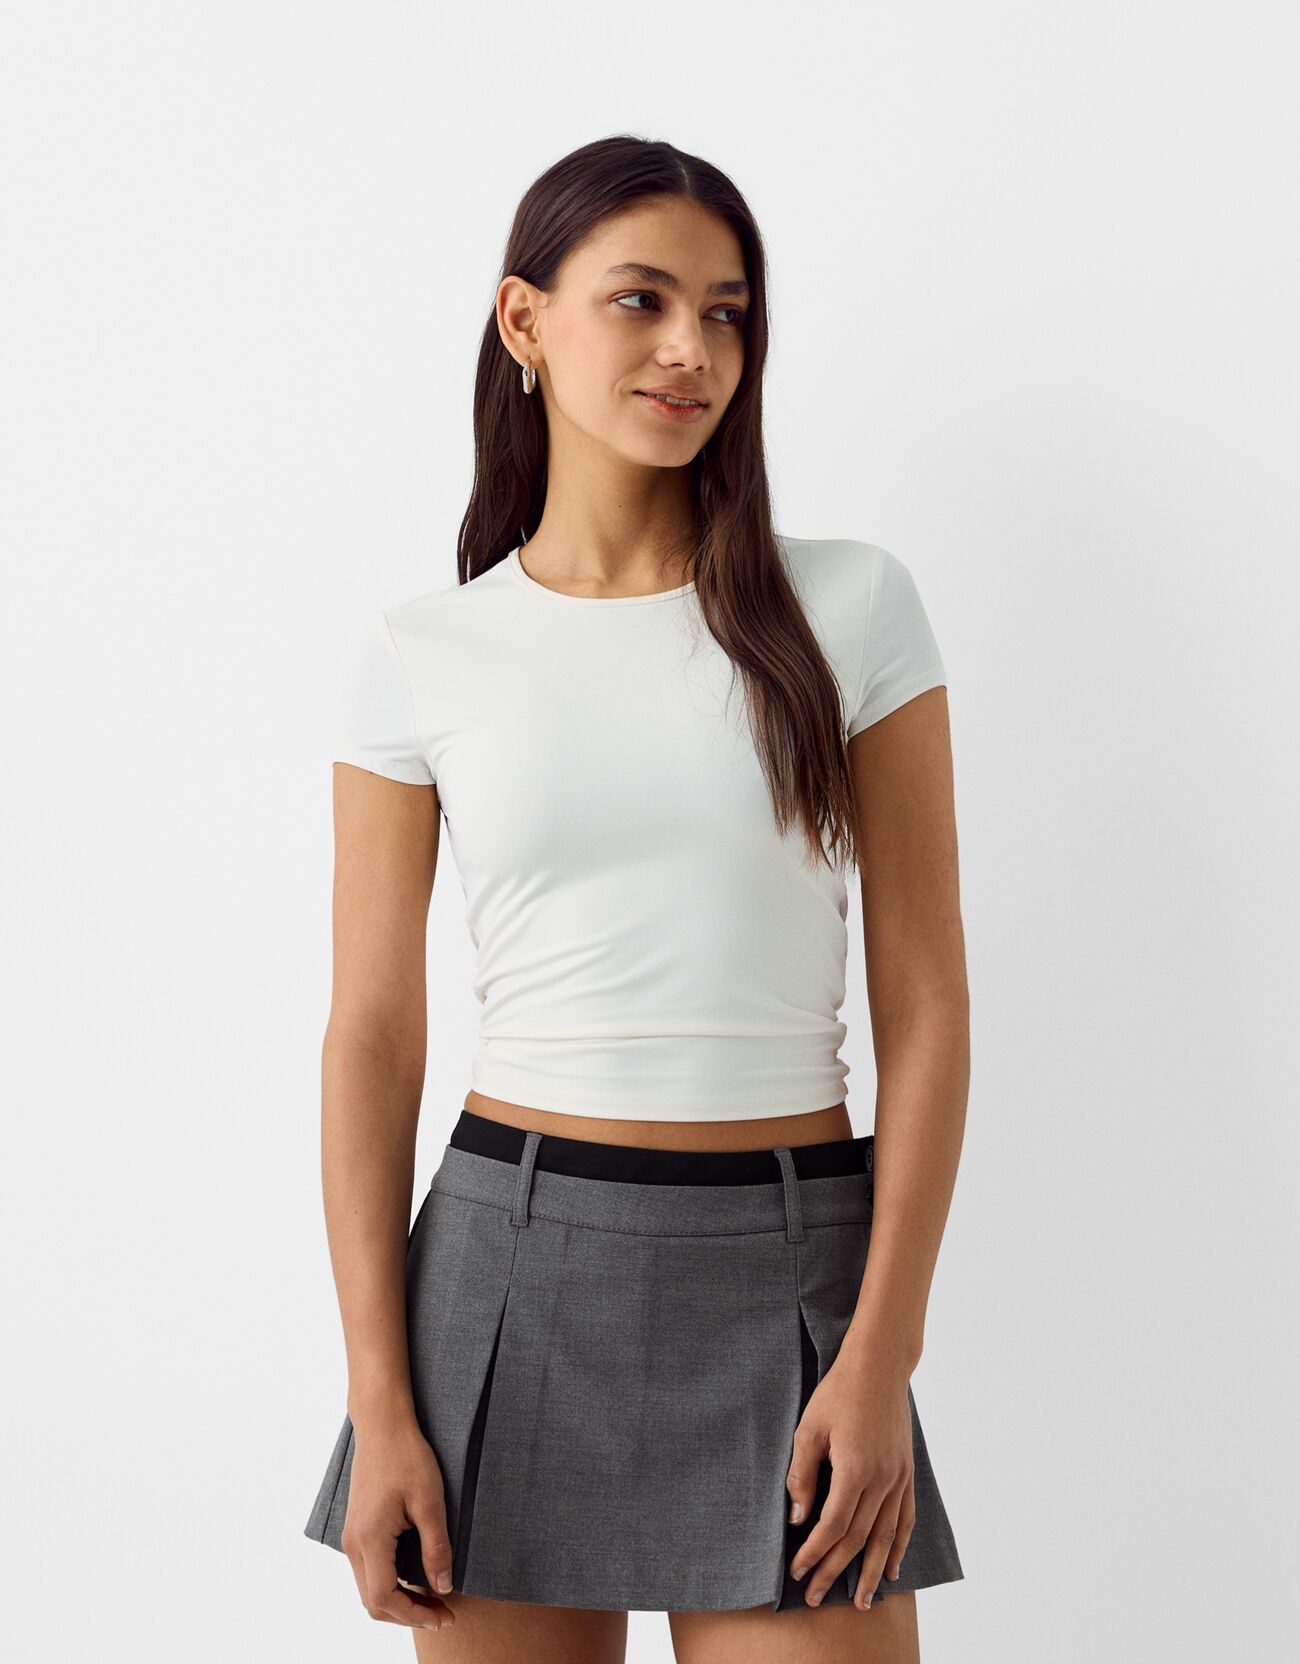 Tailored skort with box pleats - Skirts - BSK Teen